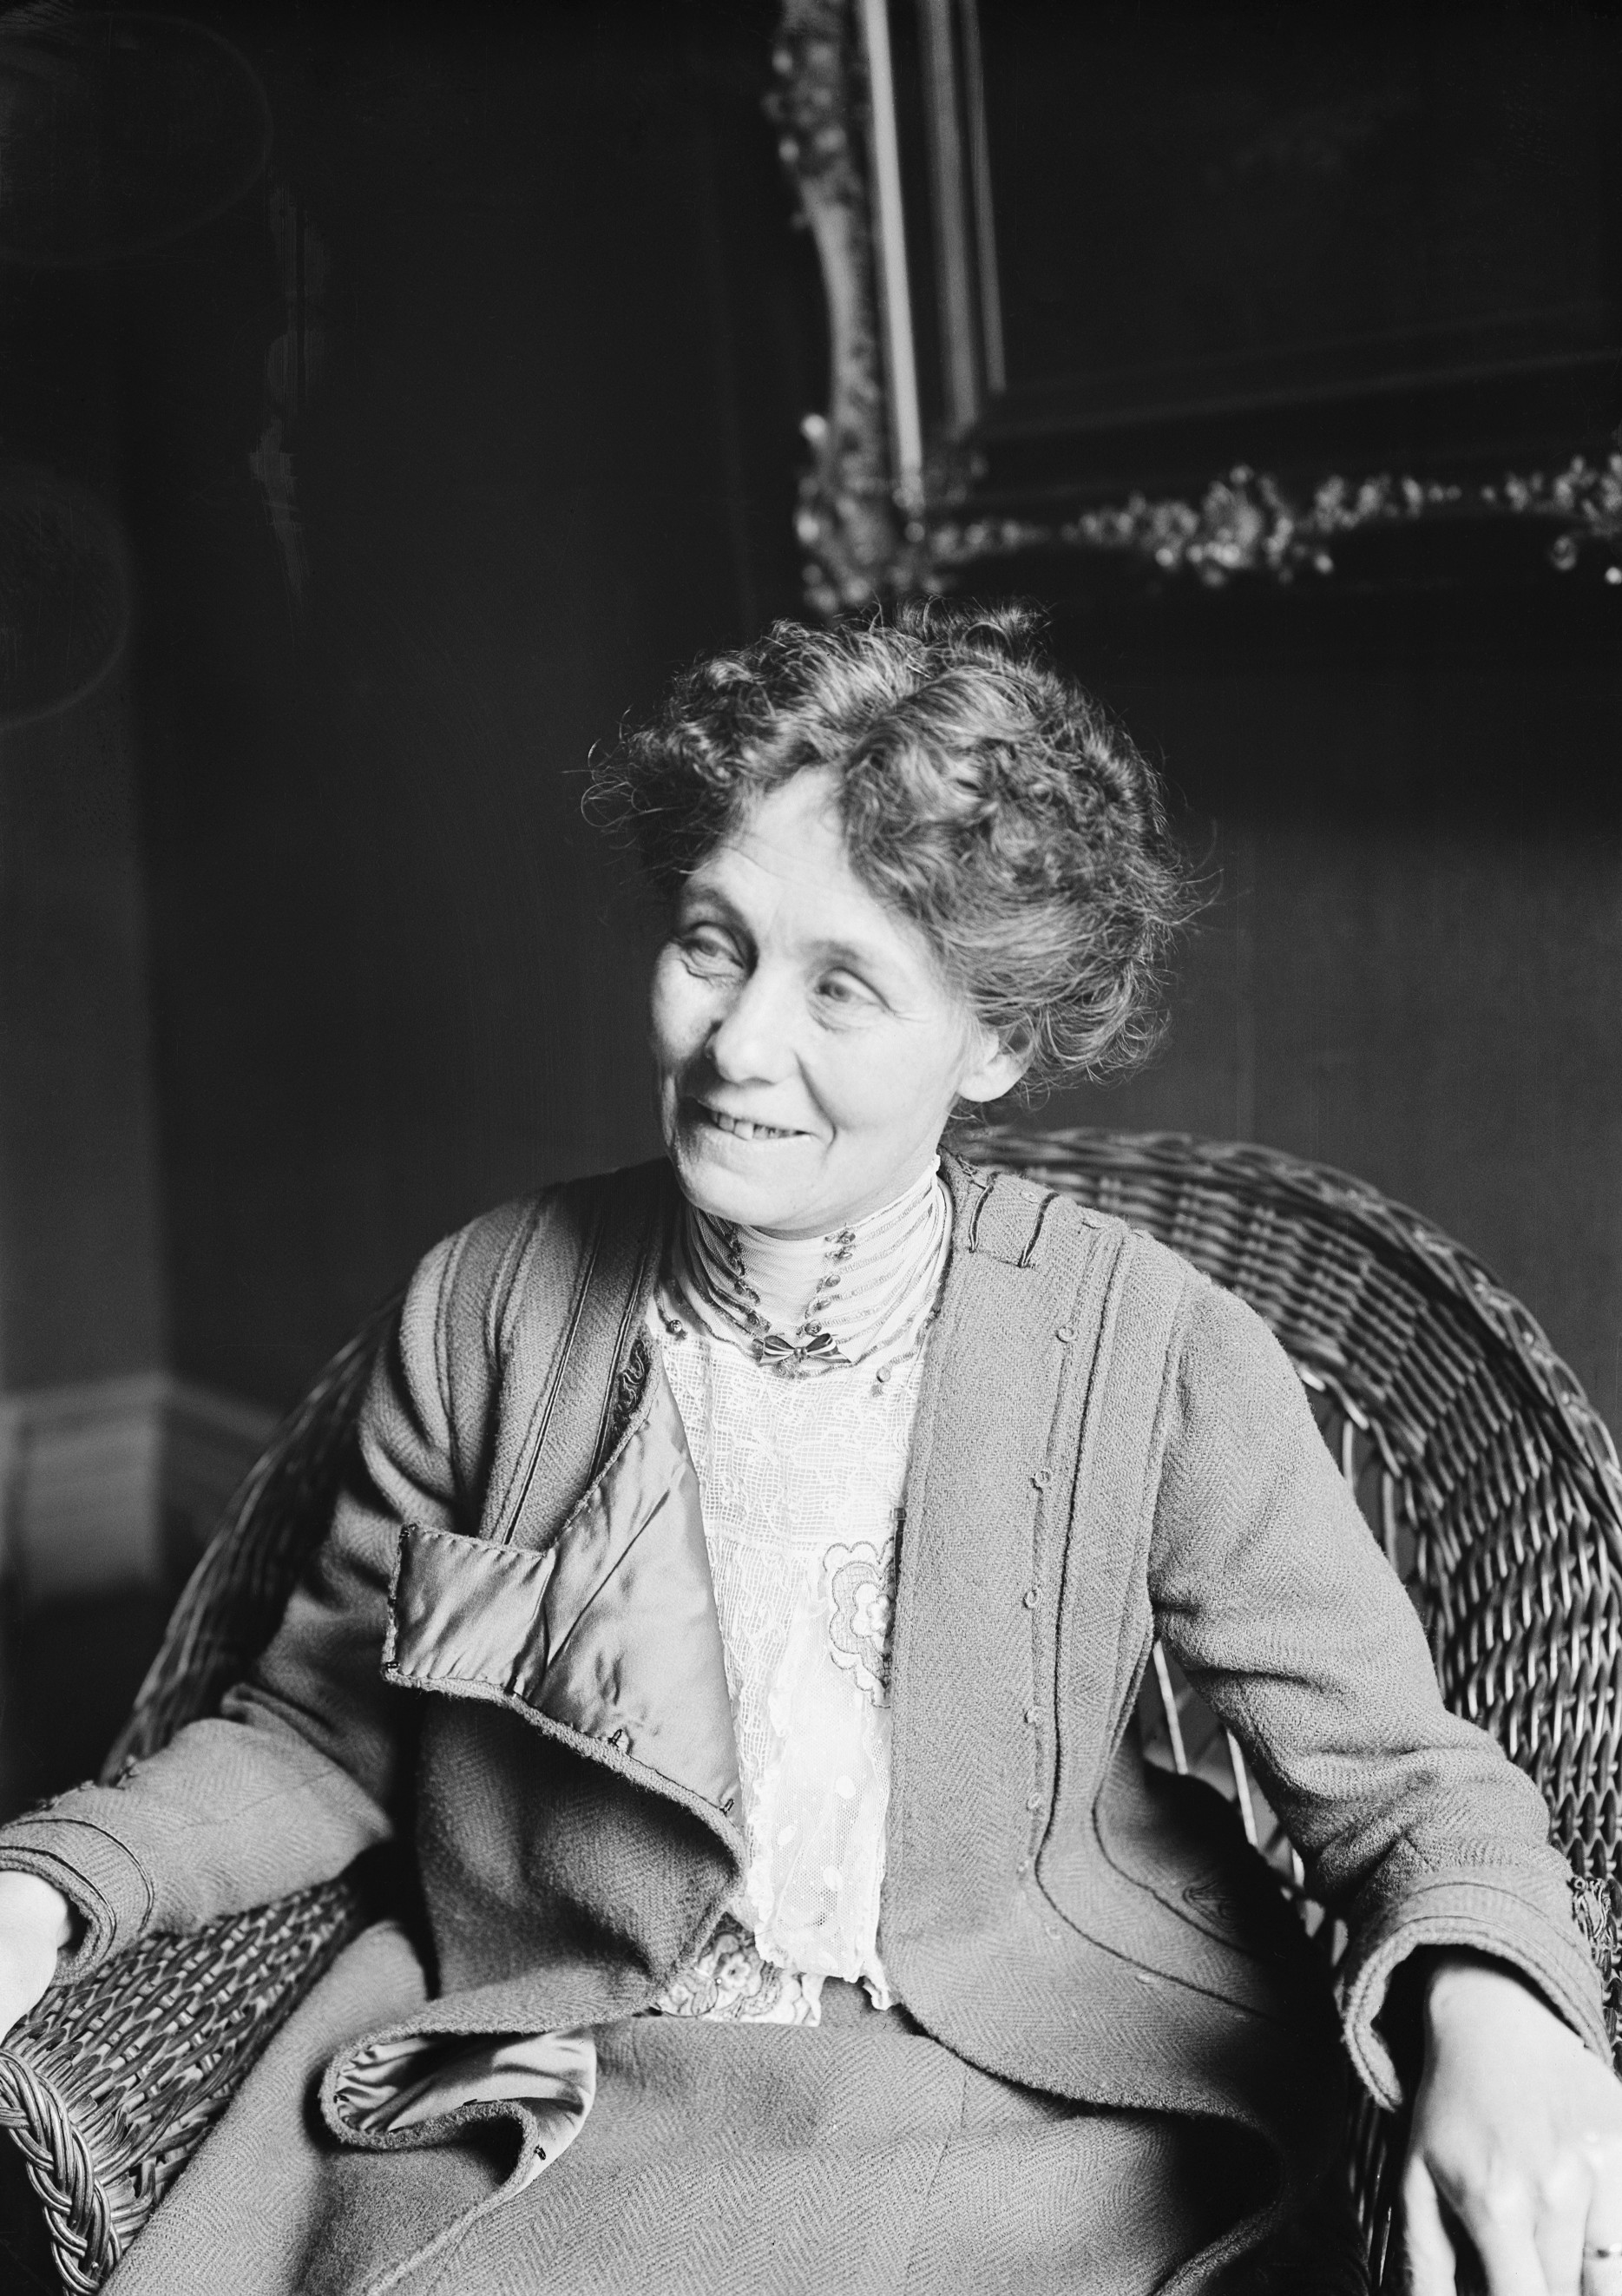 Emmeline Pankhurst, Britain